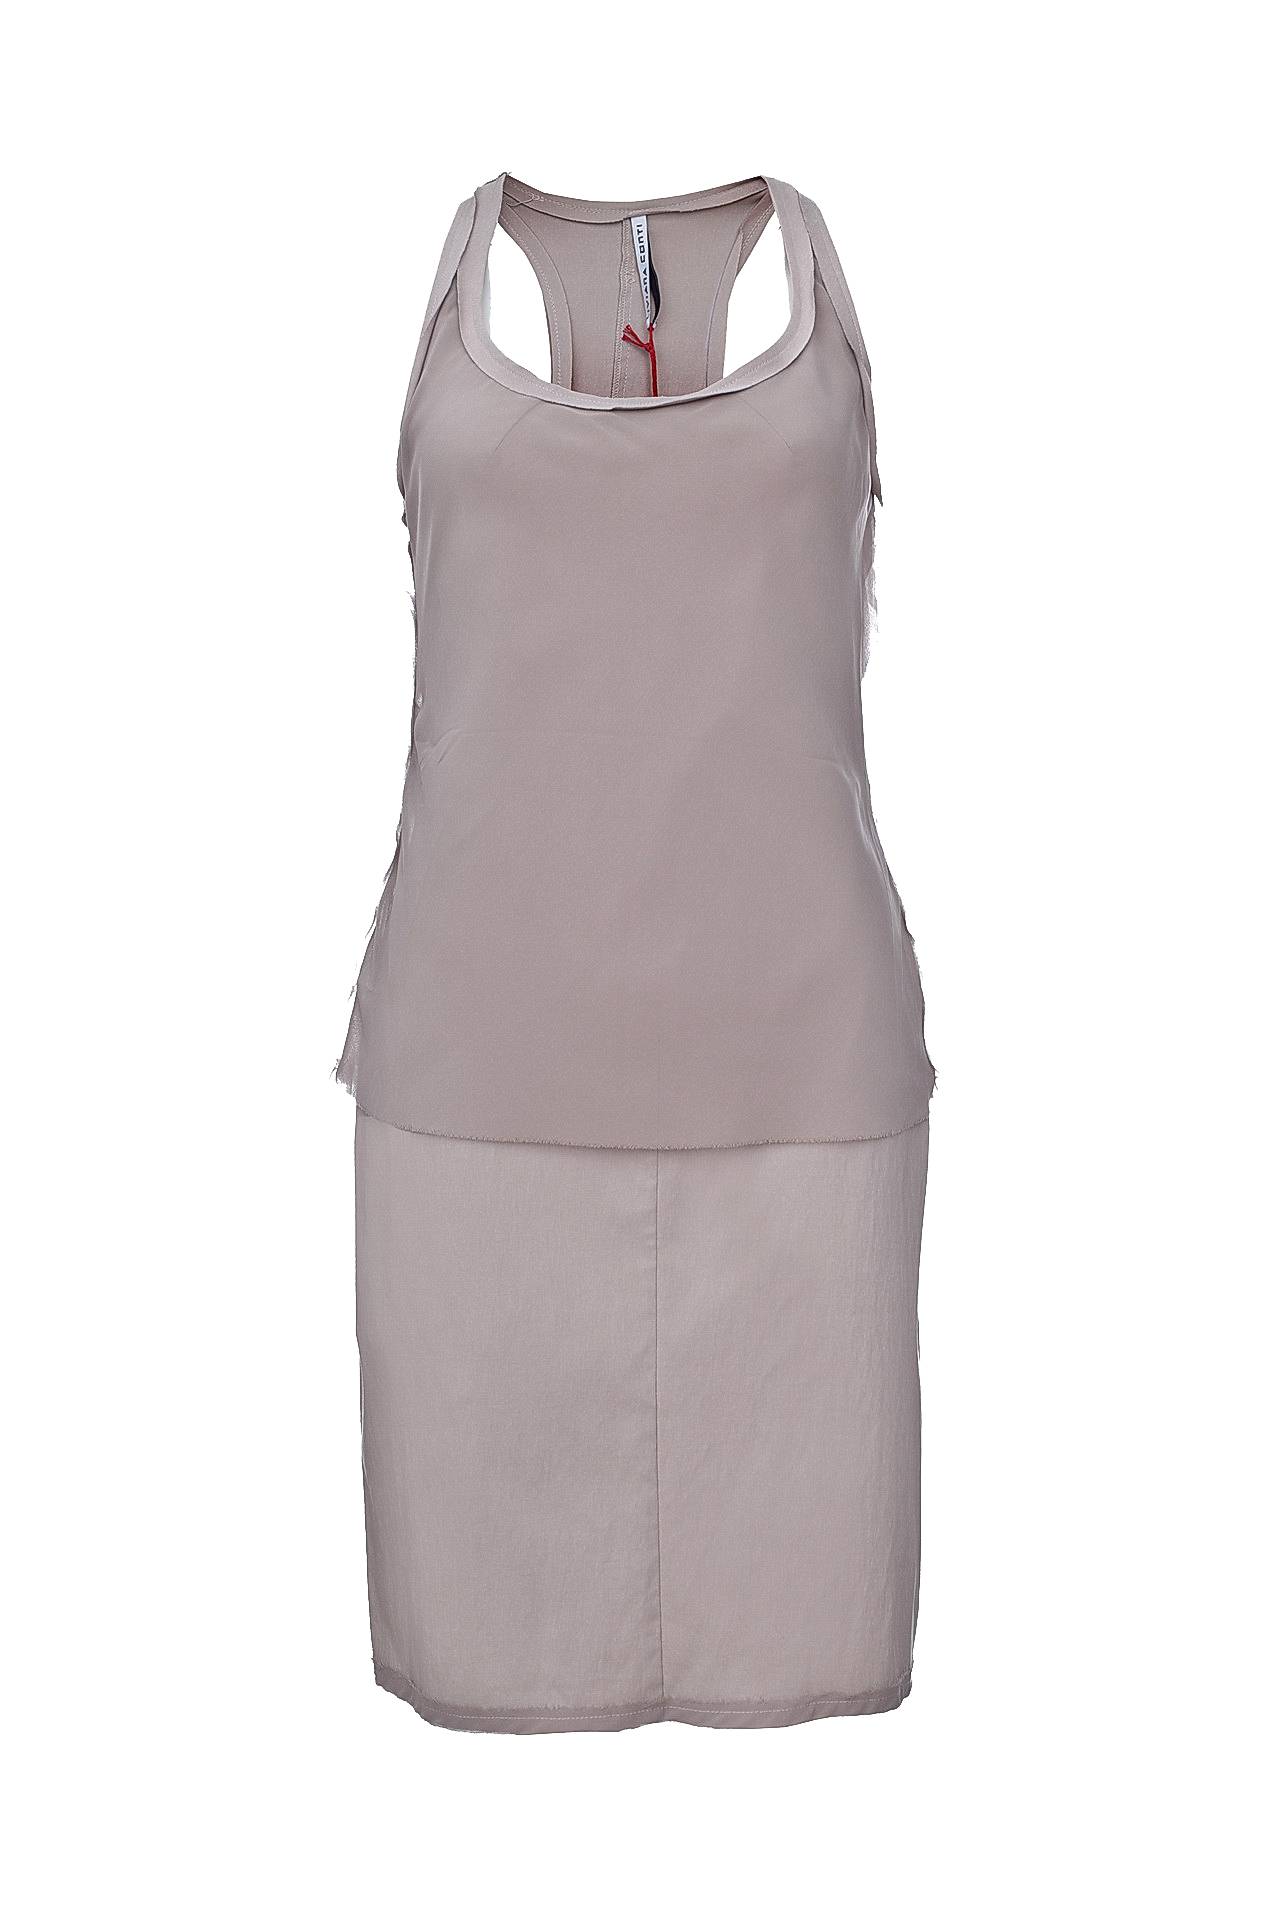 Одежда женская Платье LIVIANA CONTI (F1E726/11.1). Купить за 9250 руб.